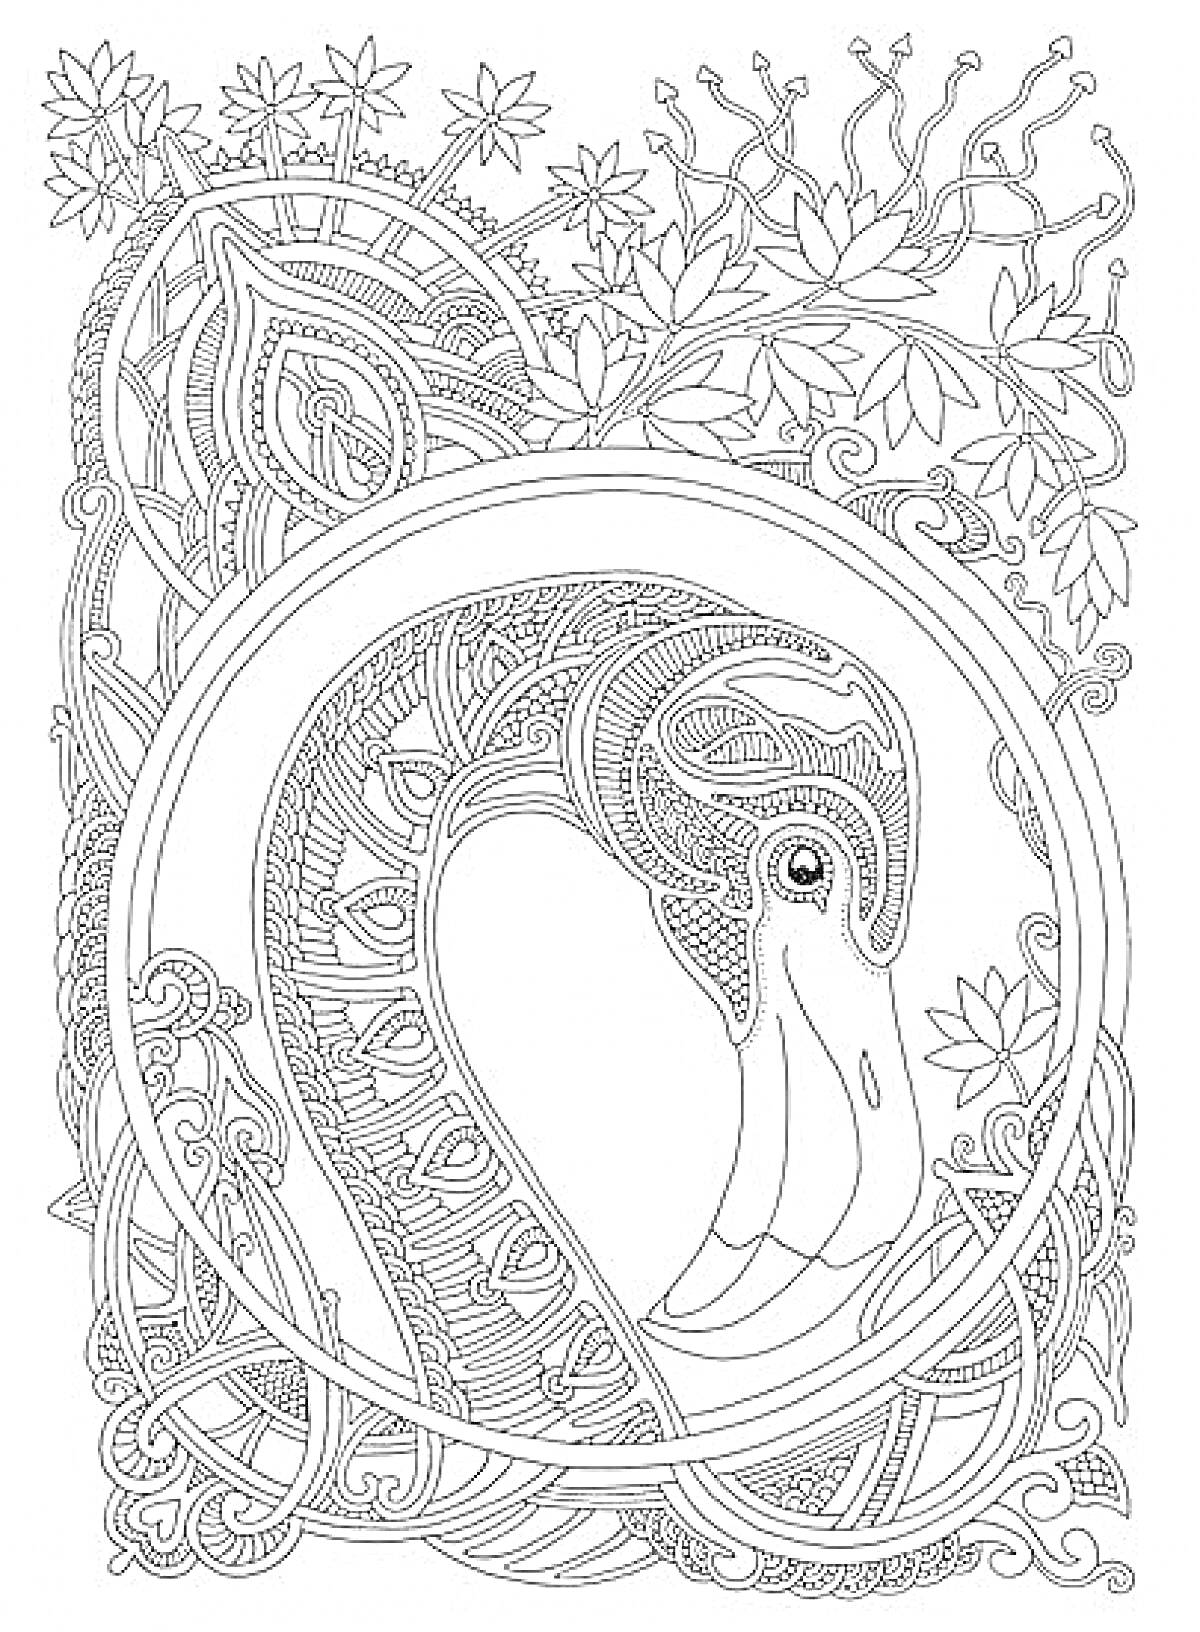 Раскраска антистресс раскраска с изображением фламинго в декоративной рамке, окруженного узорами и листвой